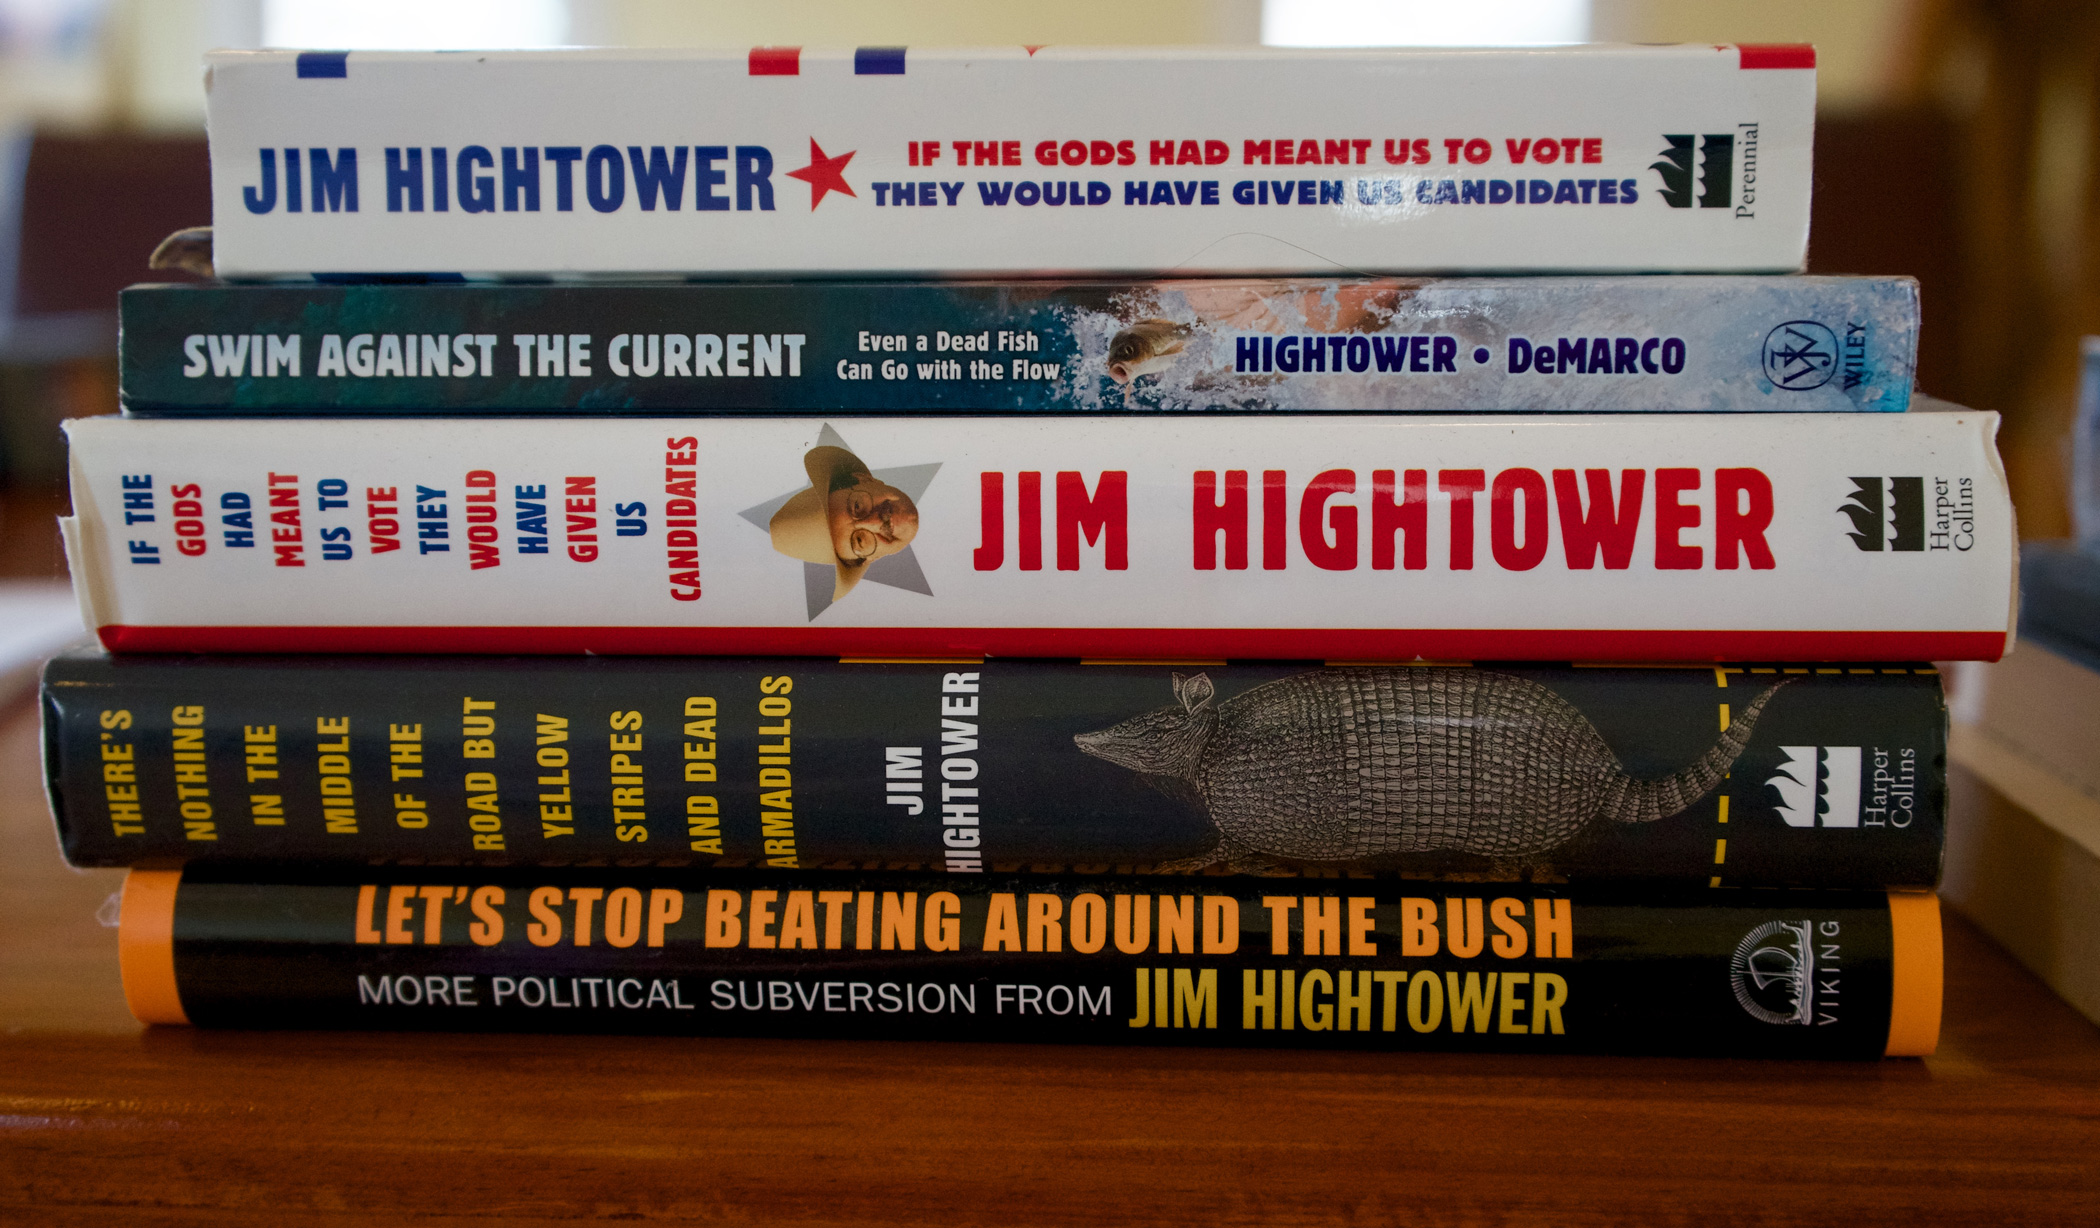 Jim Hightower's books